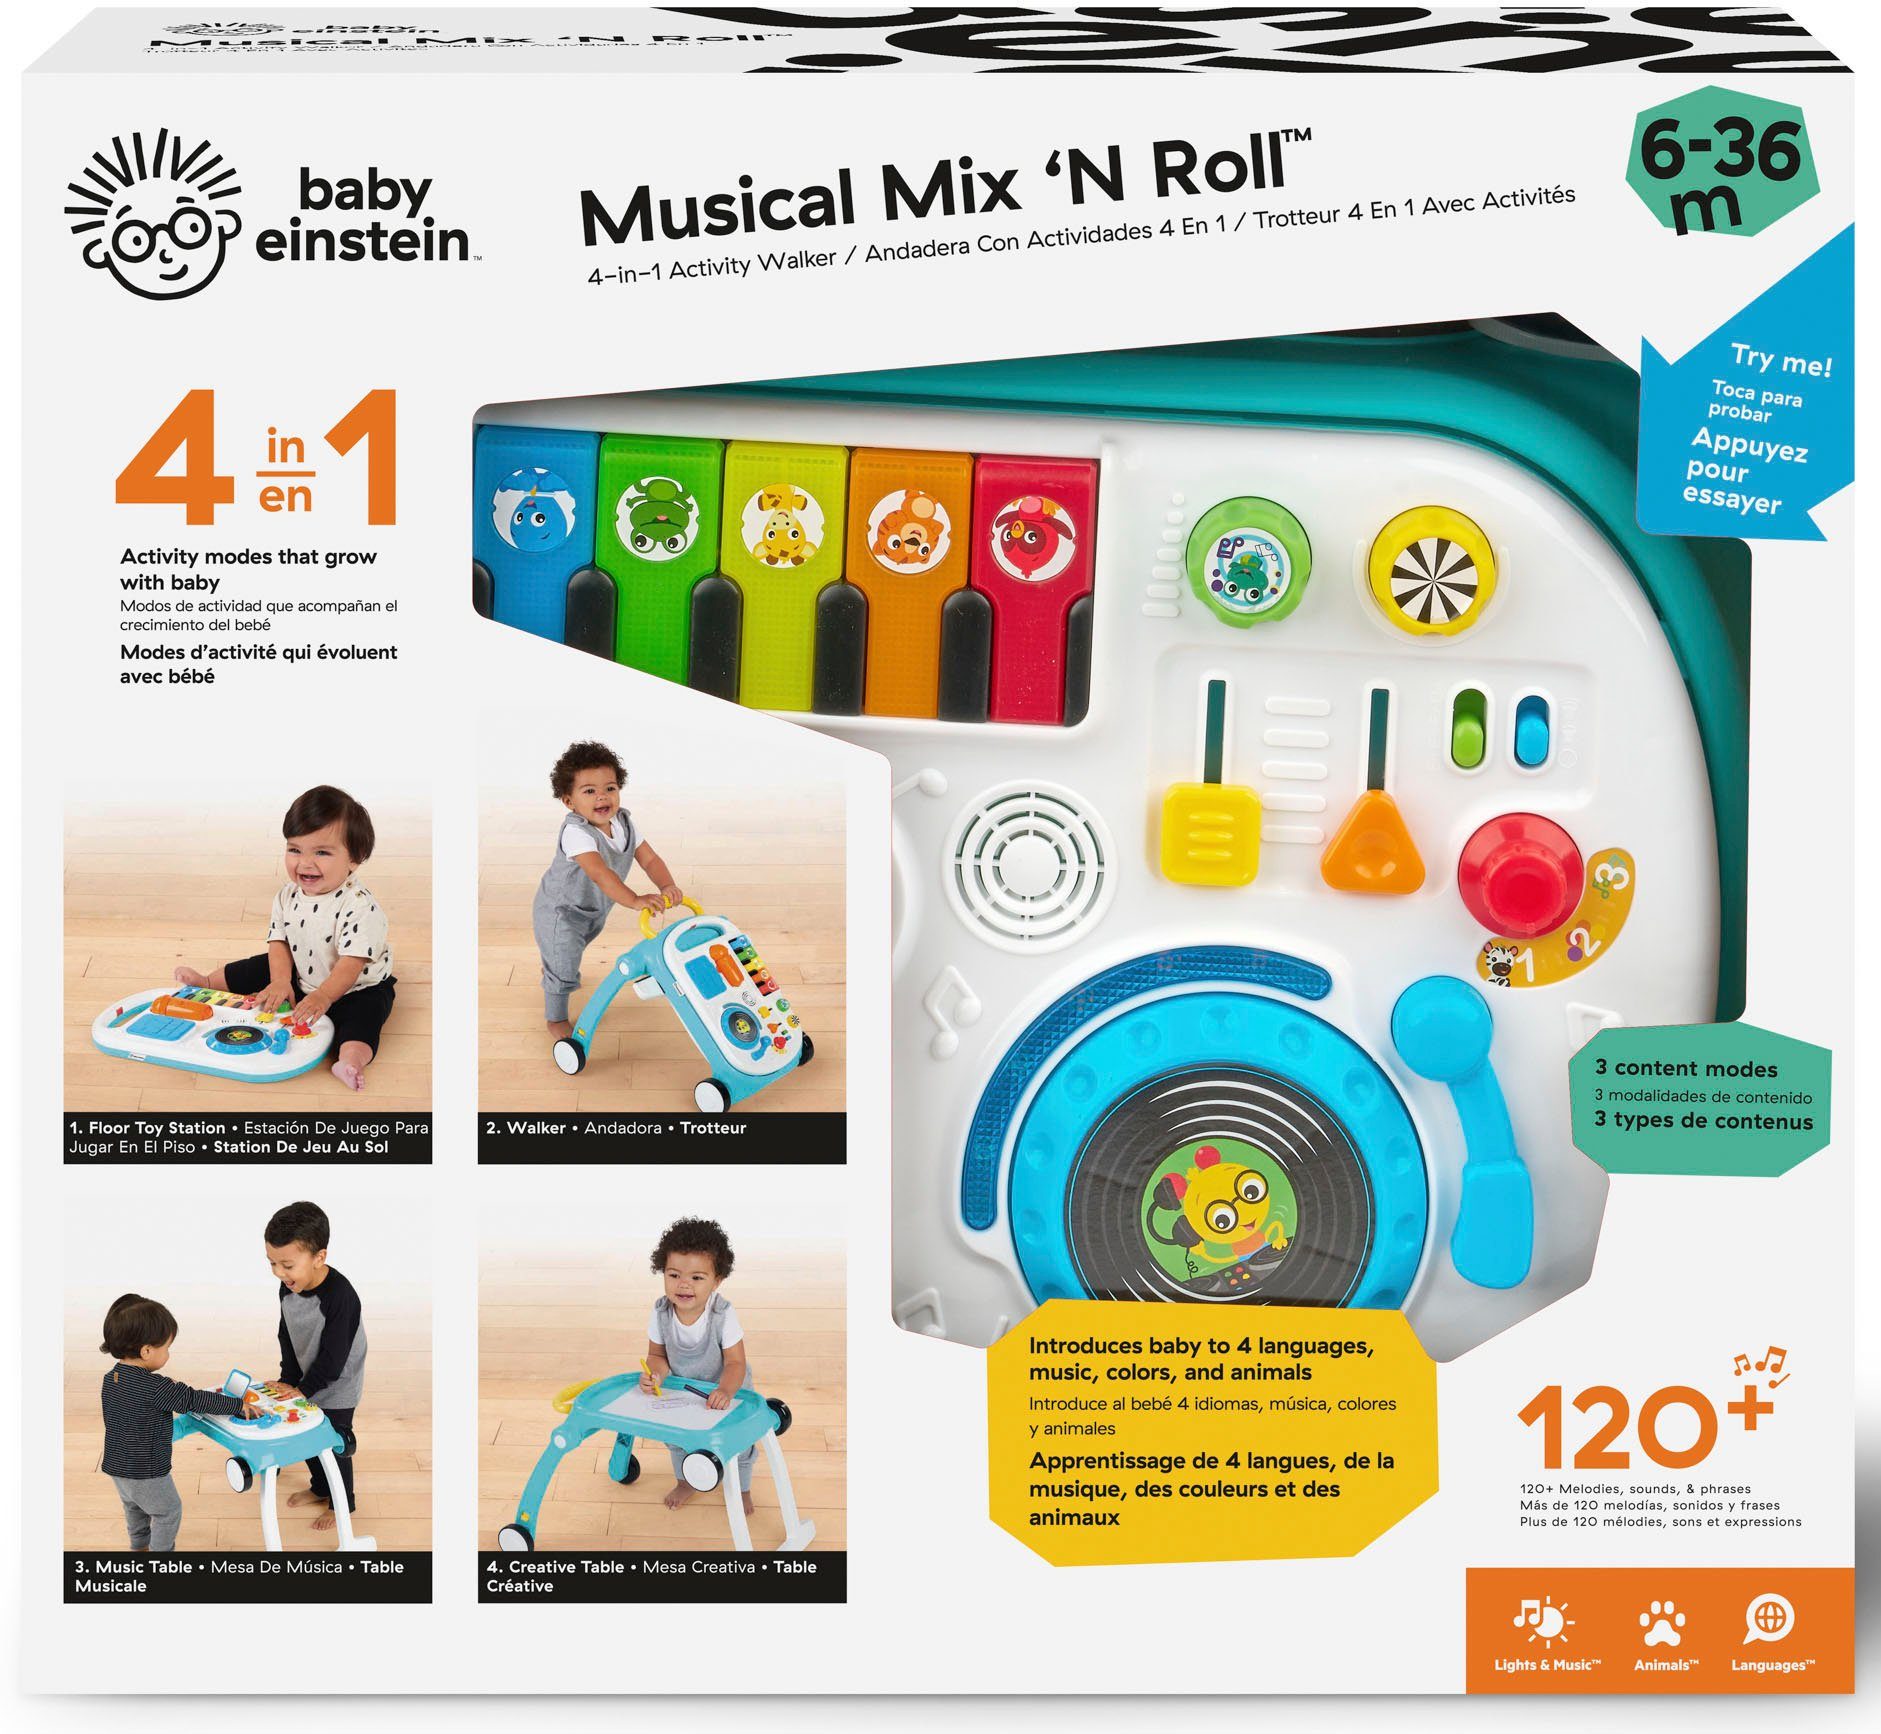 Roll, Sound Baby Einstein Licht Mix mit ‘N und Musical Lauflernwagen